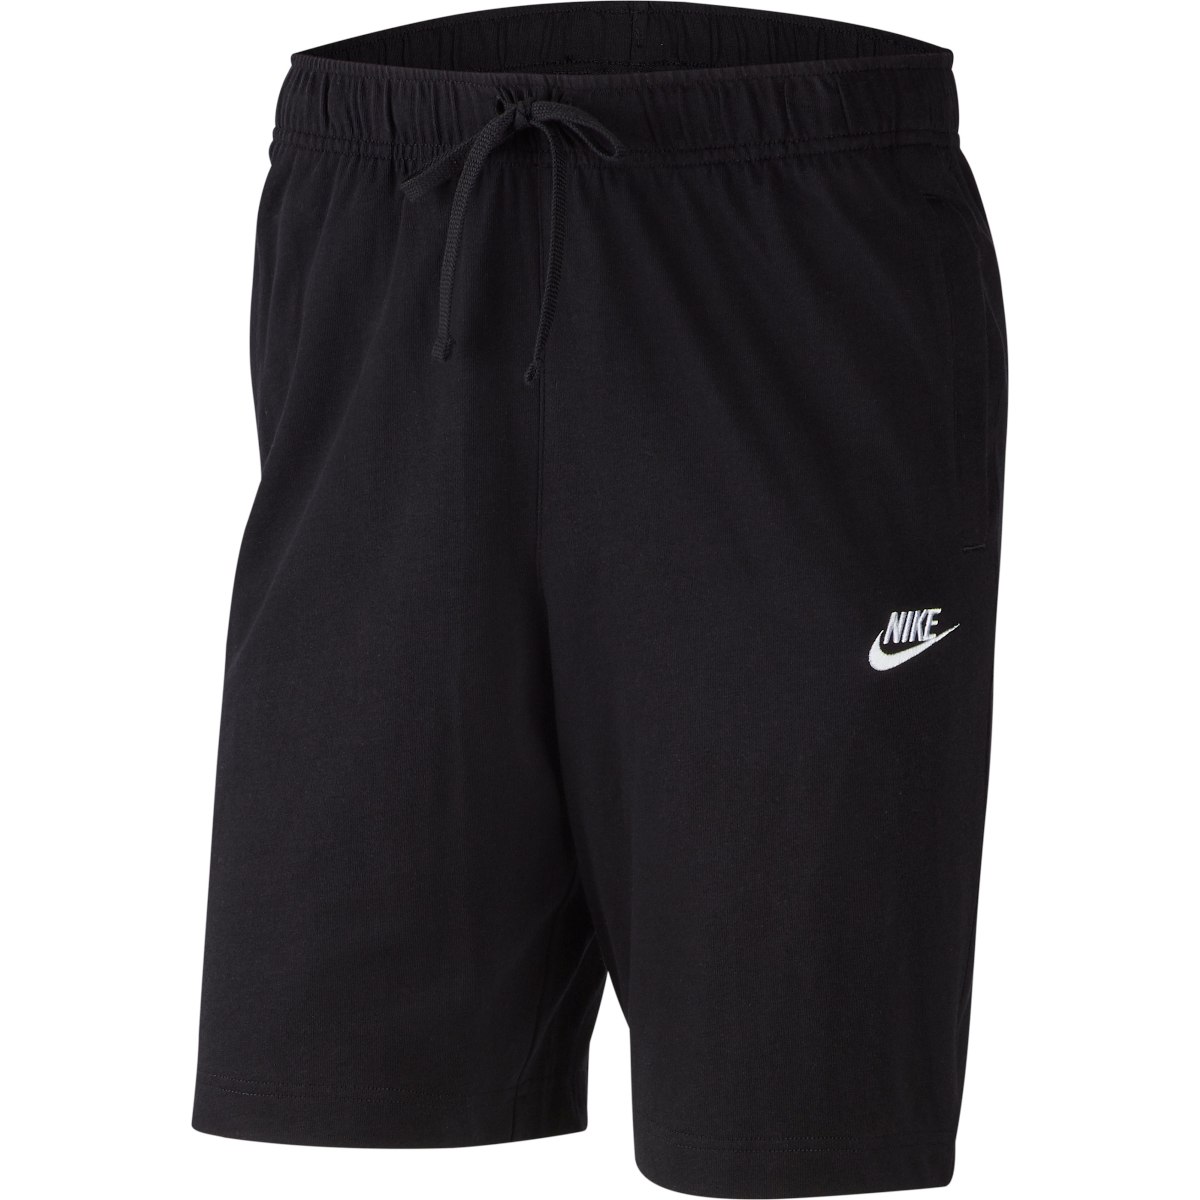 Produktbild von Nike Sportswear Club Shorts Herren - schwarz/weiß BV2772-010